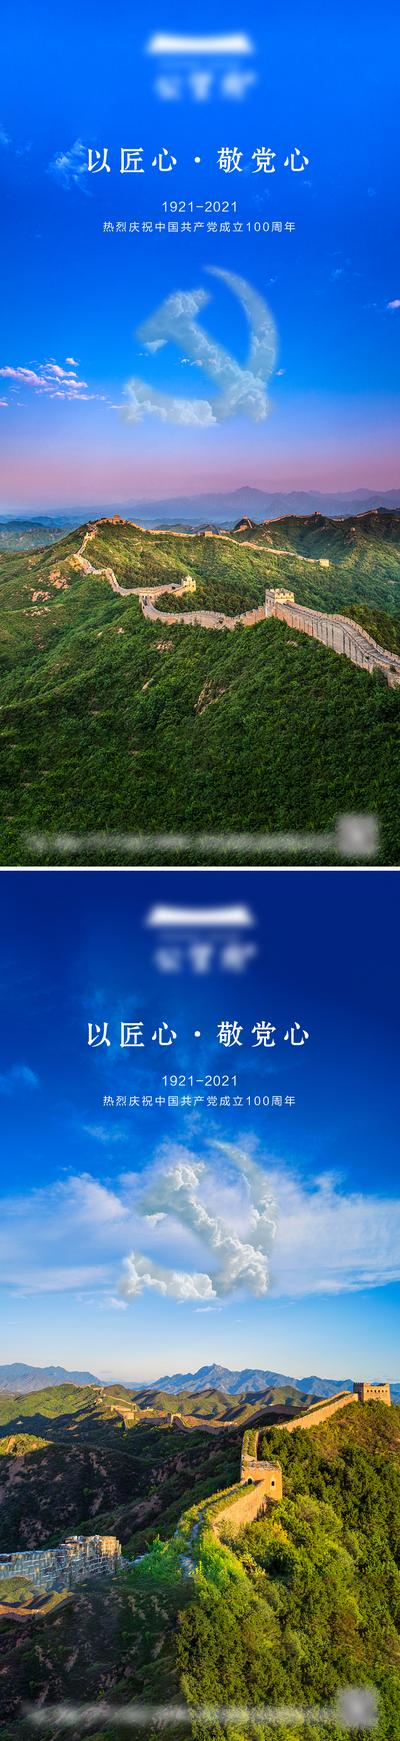 南门网 海报 地产 公历节日 建党节  党徽   长城